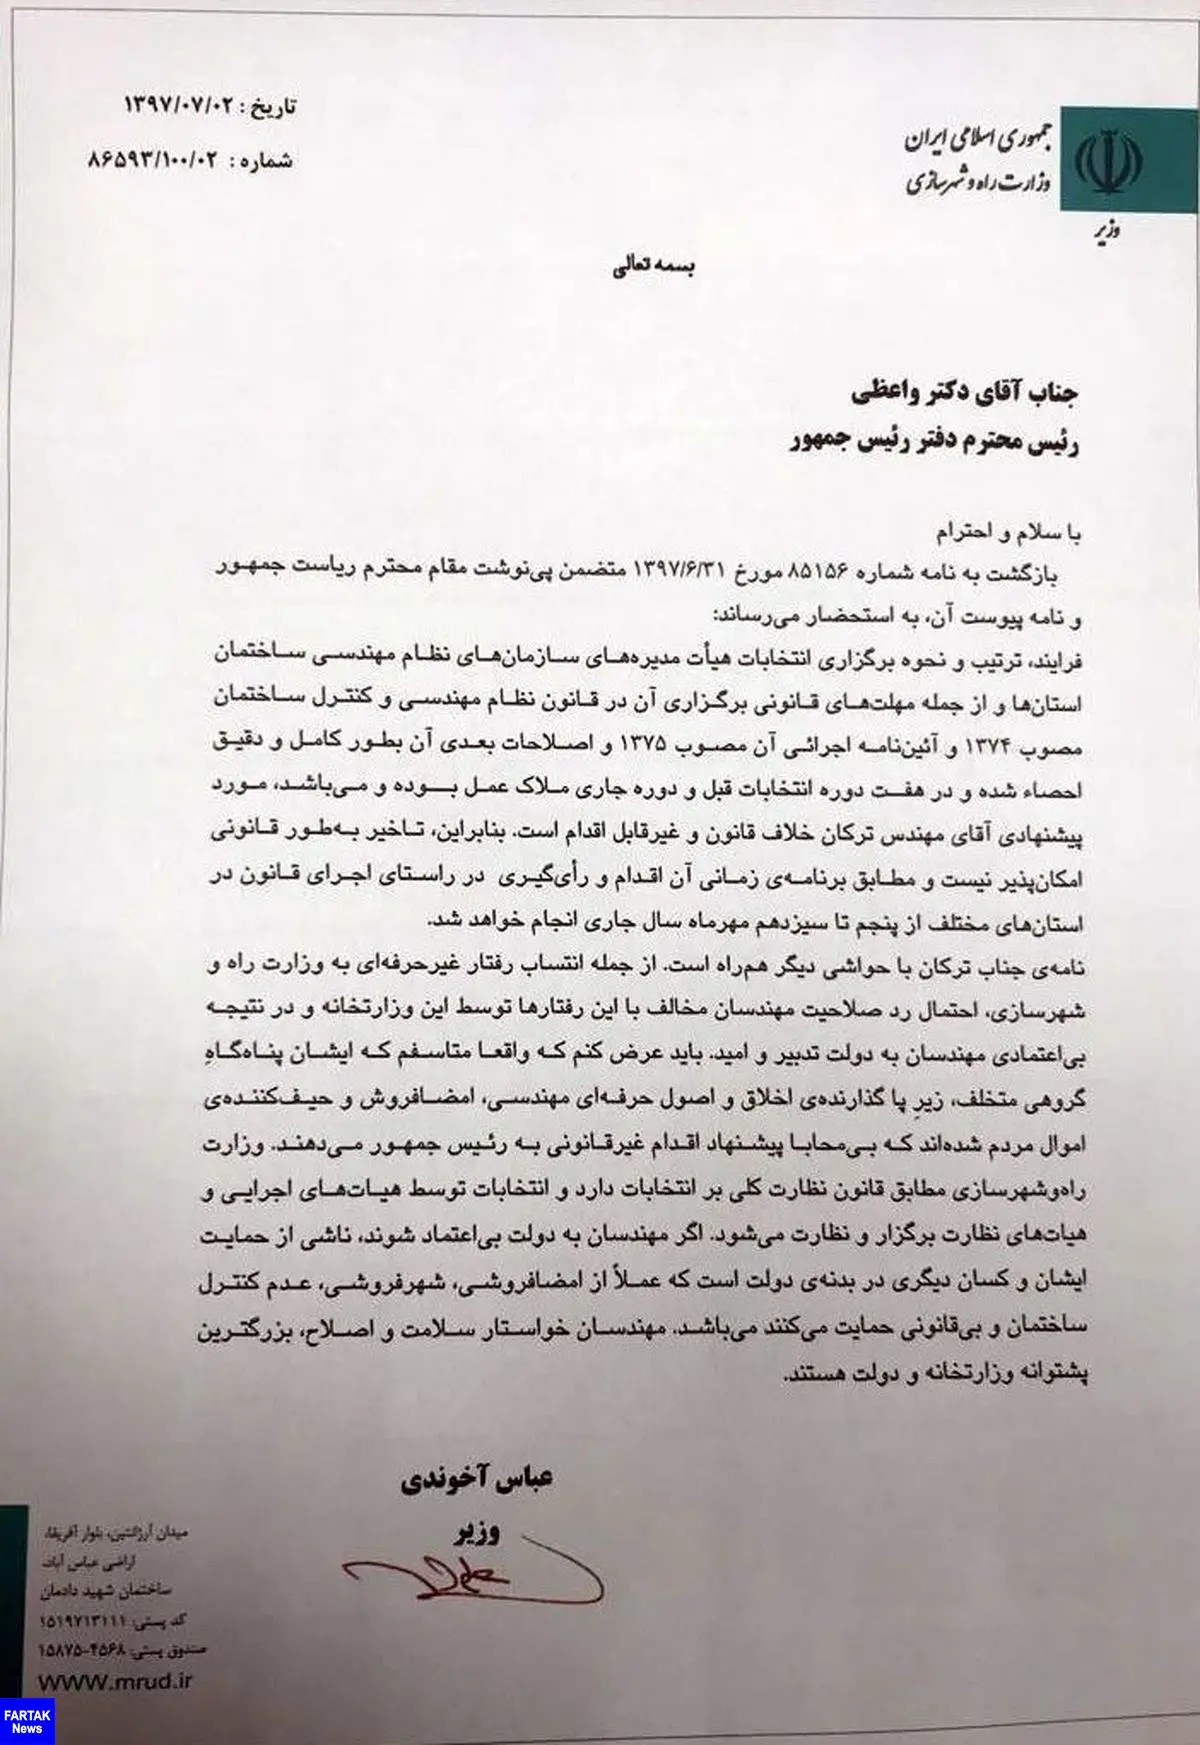 مخالفت وزیر راه با توصیه روحانی/ آخوندی: برای ترکان متاسفم؛ درخواست او غیرقانونی است